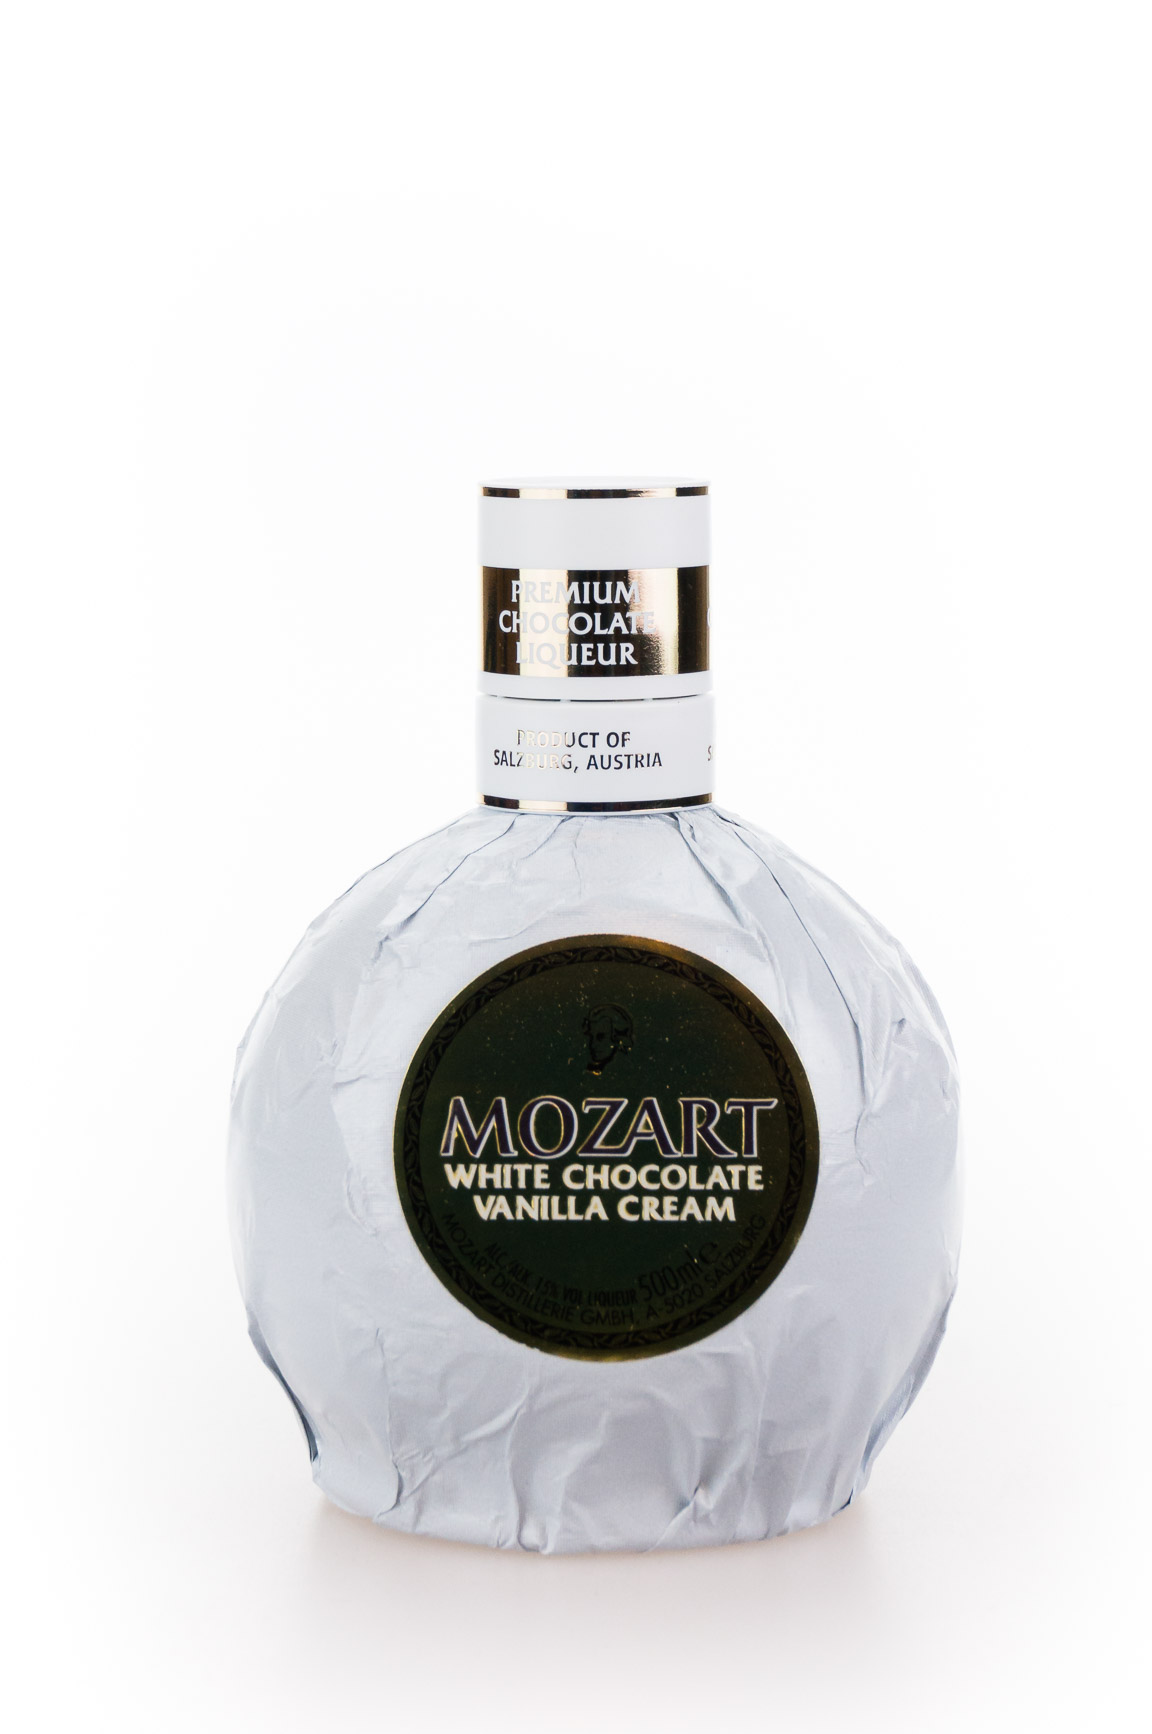 Mozart White Chocolate günstig (0,5L) Vanilla kaufen